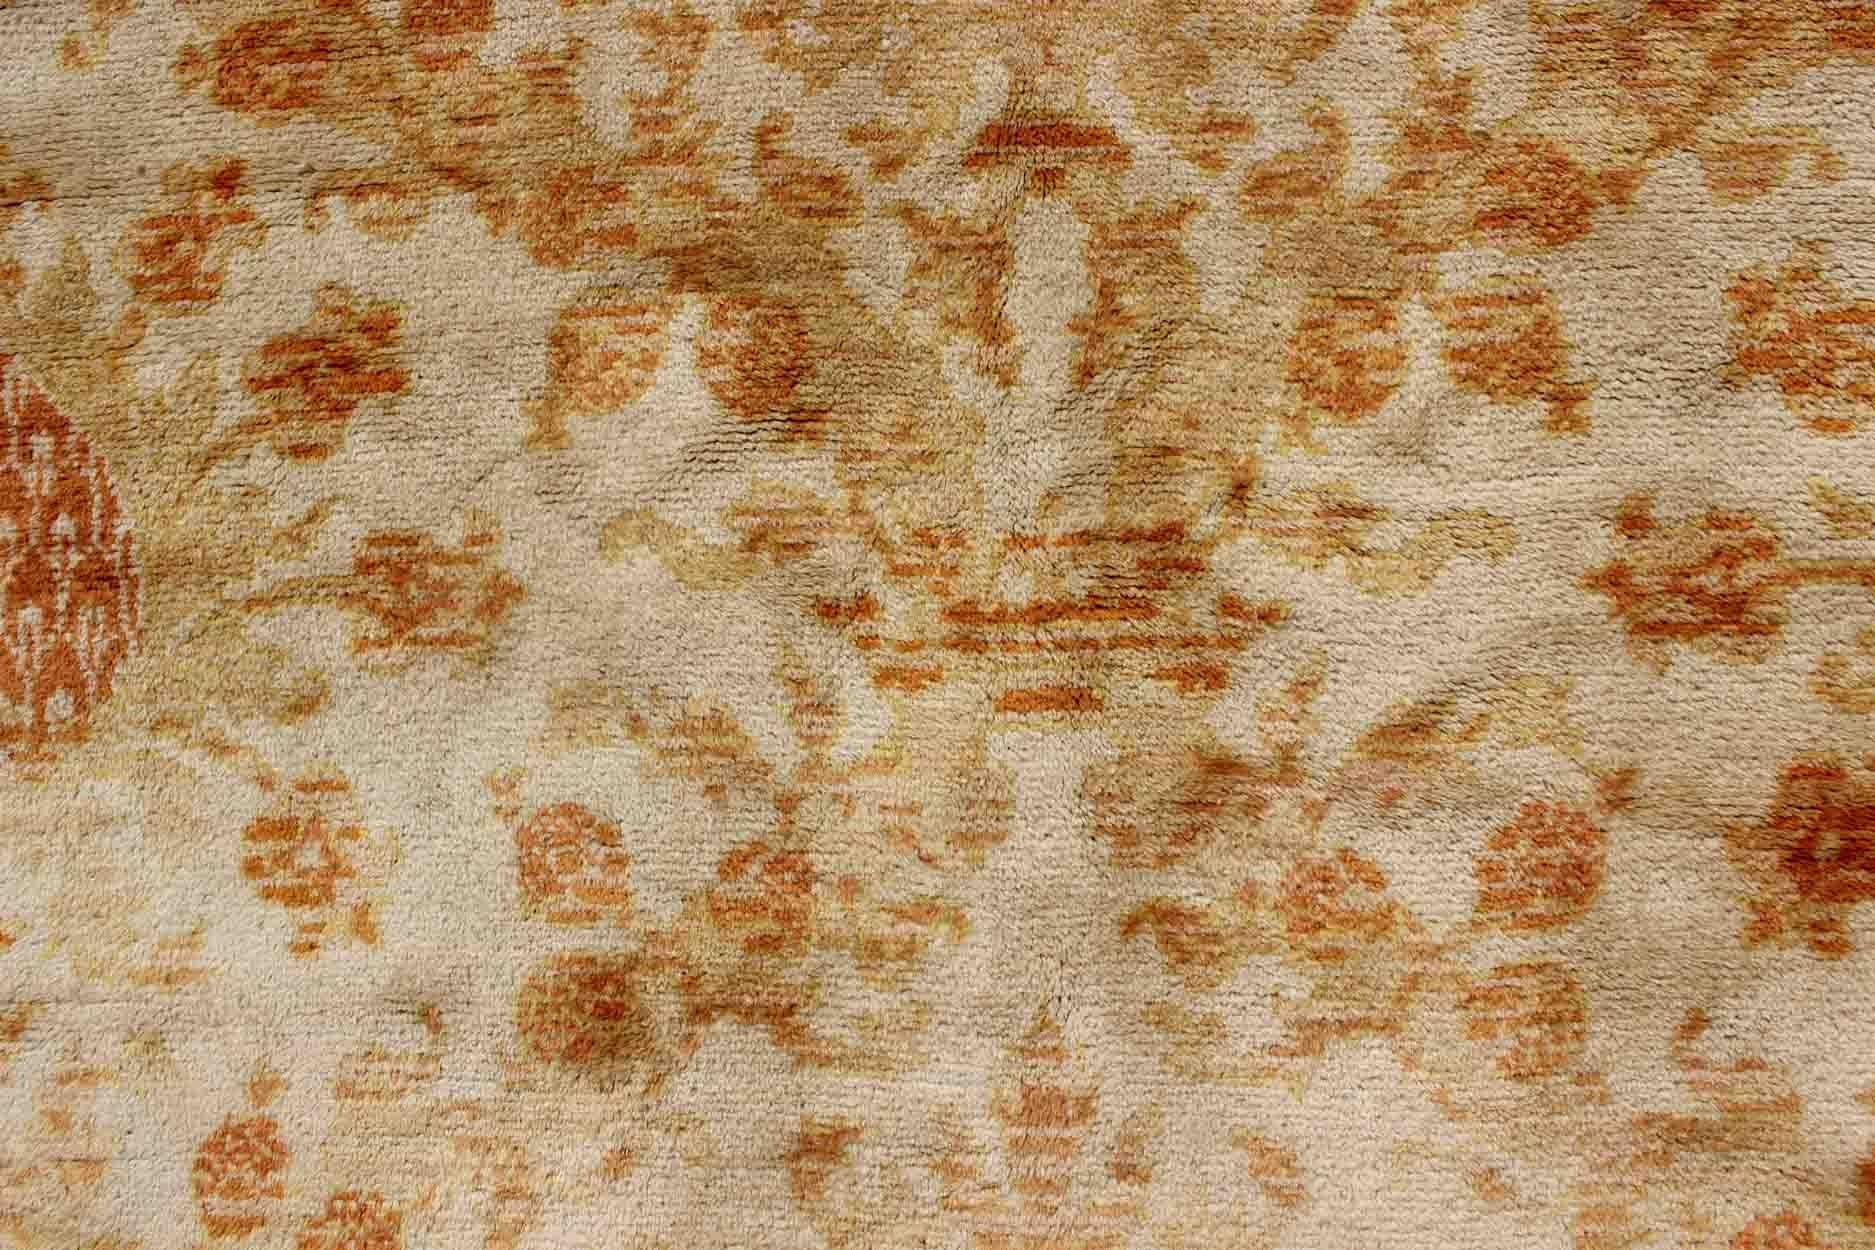 Mid-20th Century Antique Spanish European Carpet with Pineapple Design in Gold, Cream & Tangerine For Sale